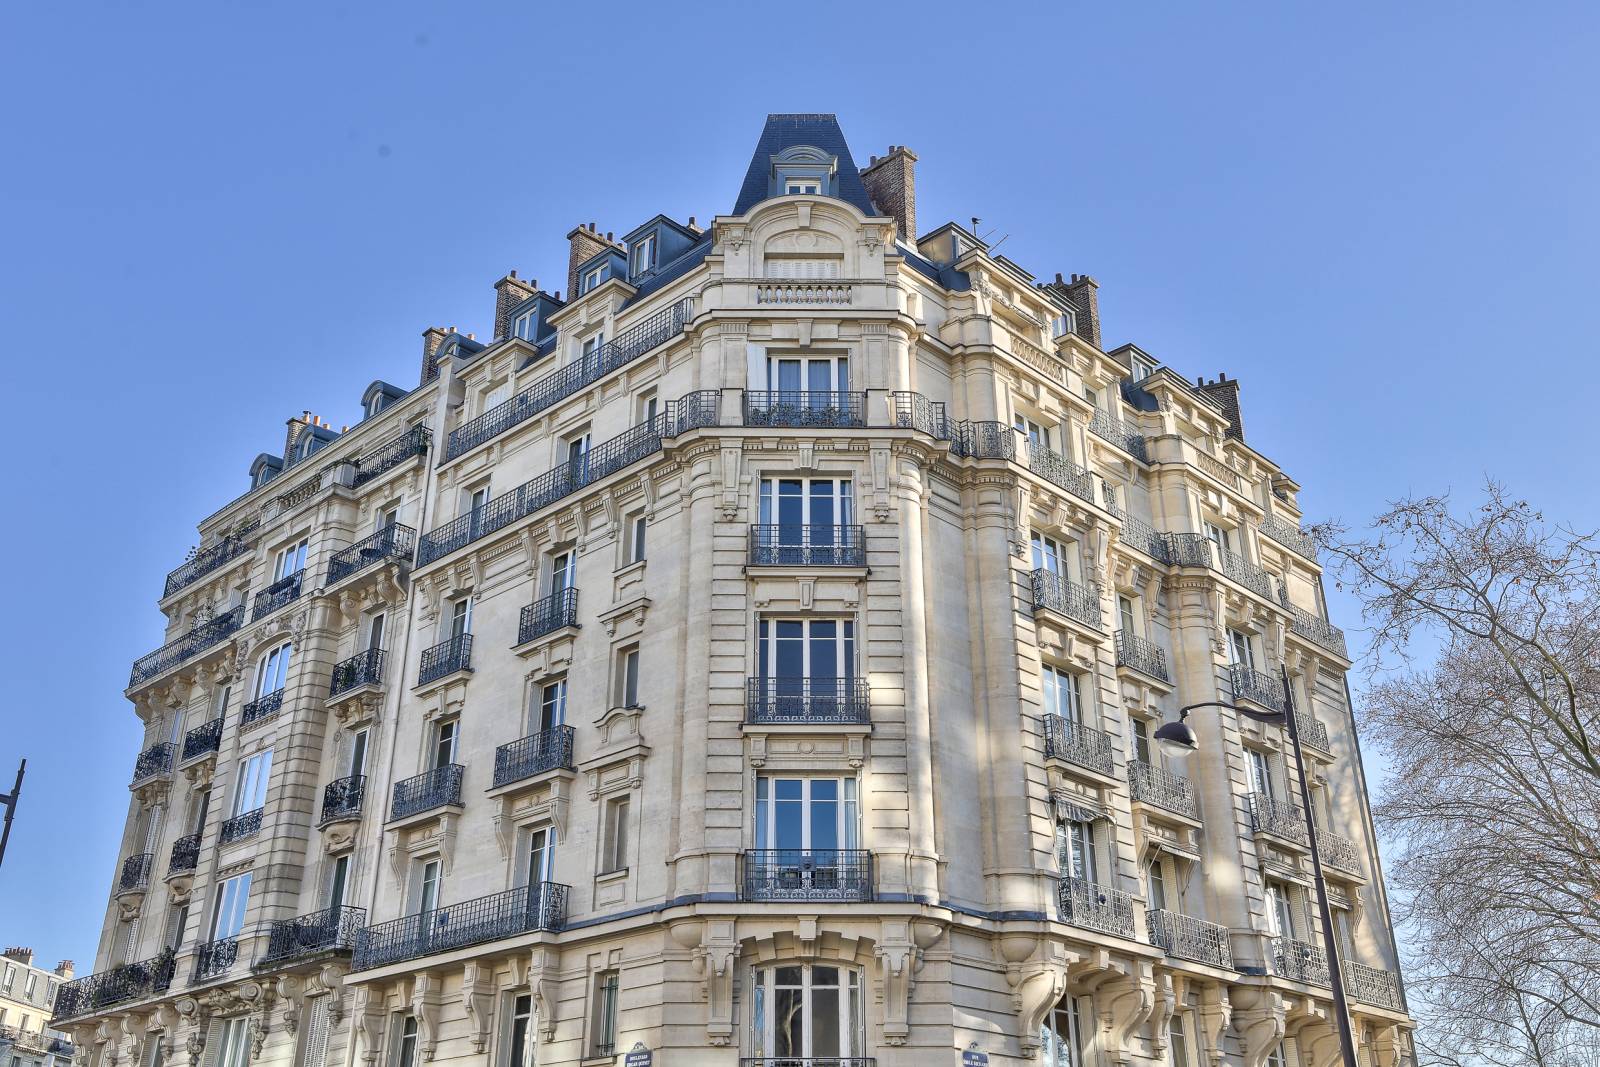 1 bis Boulevard Edgar Quinet, 75014 Paris - appartement familial à rénover vendu par notre agence immobilière Paris 6ème Century 21 Assas Raspail